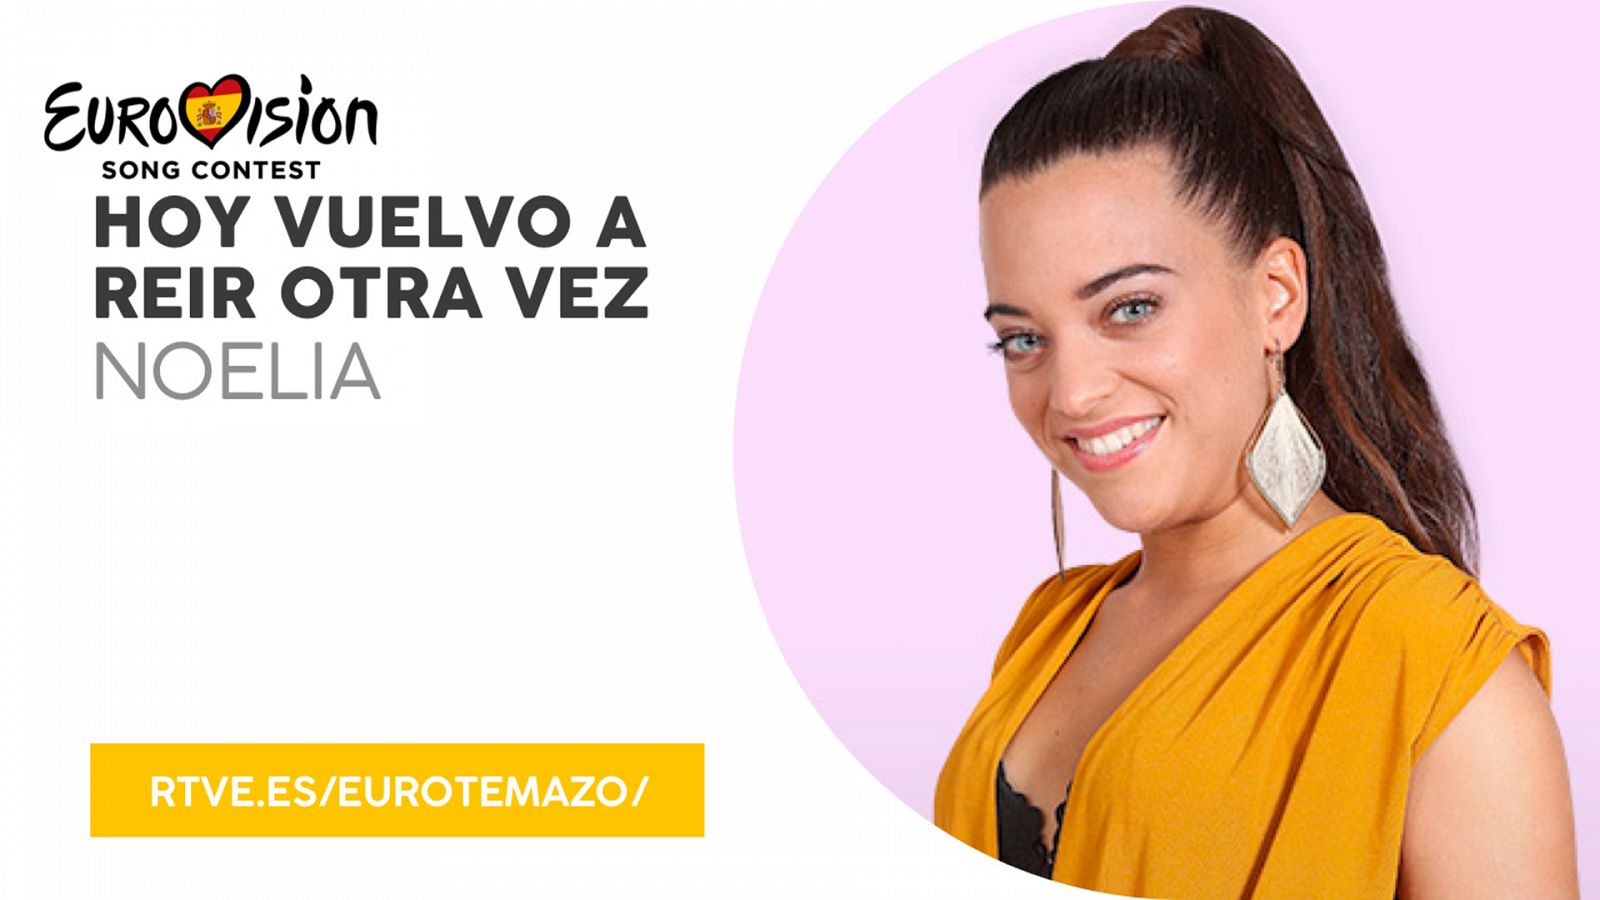 Eurovisión 2019 - Eurotemazo: versión final de "Hoy vuelvo a reír otra vez", cantada por Noelia